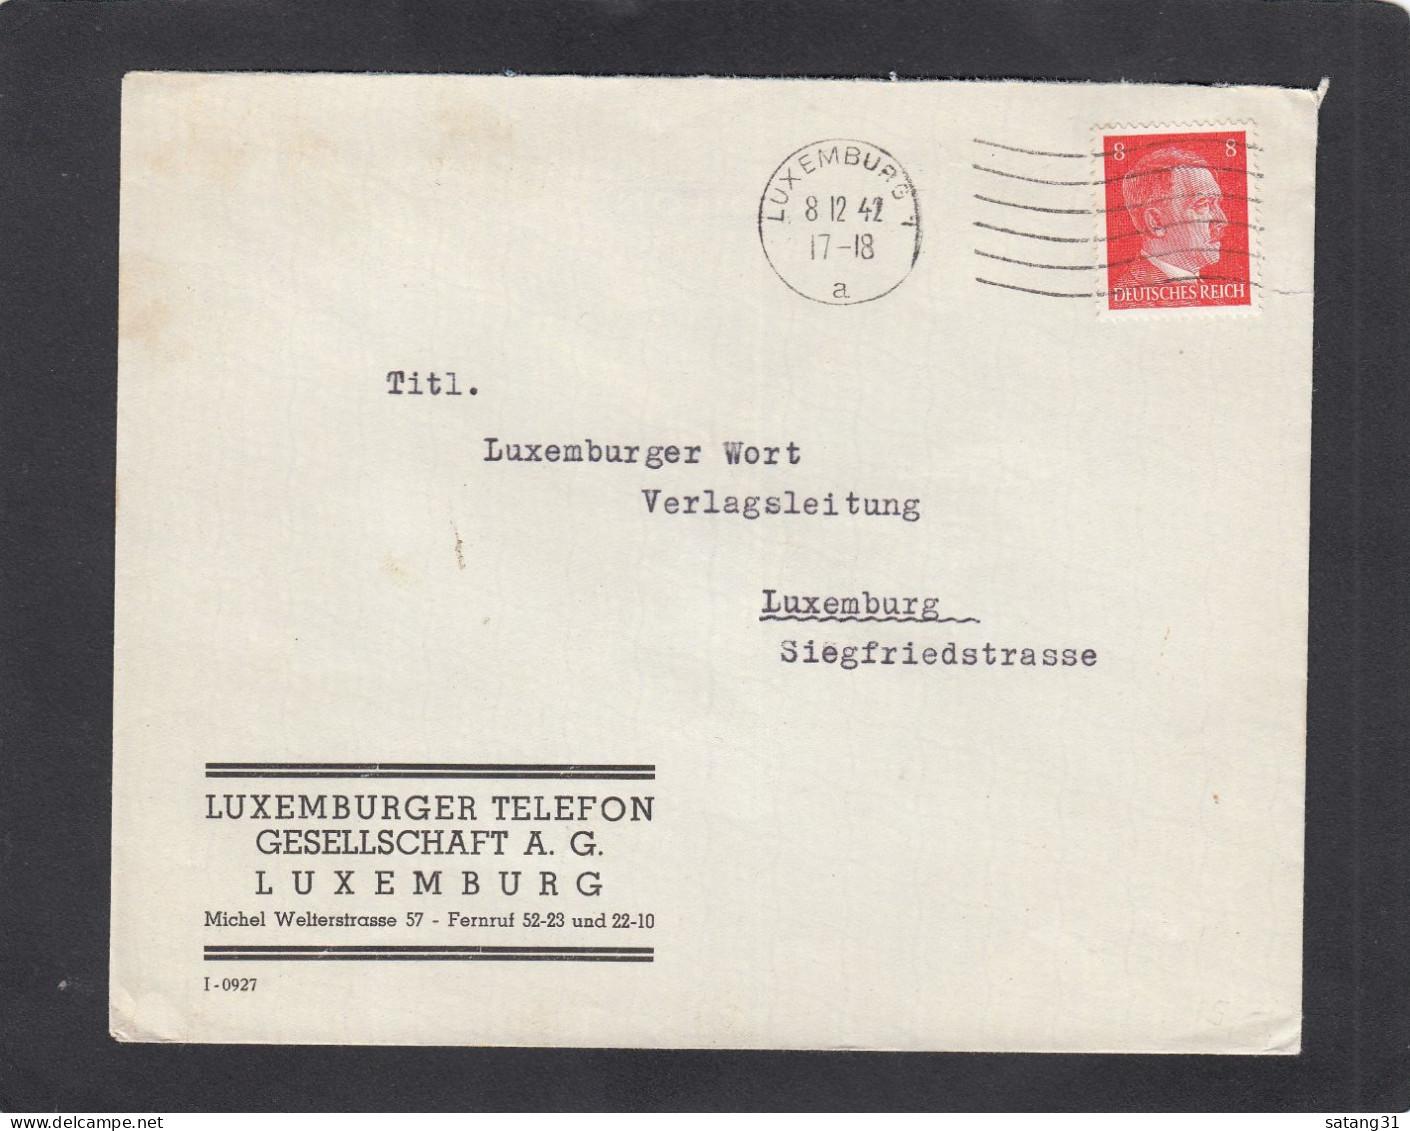 LUXEMBURGER TELEFON GESELLSCHAFT A.G., LUXEMBURG. - 1940-1944 Duitse Bezetting